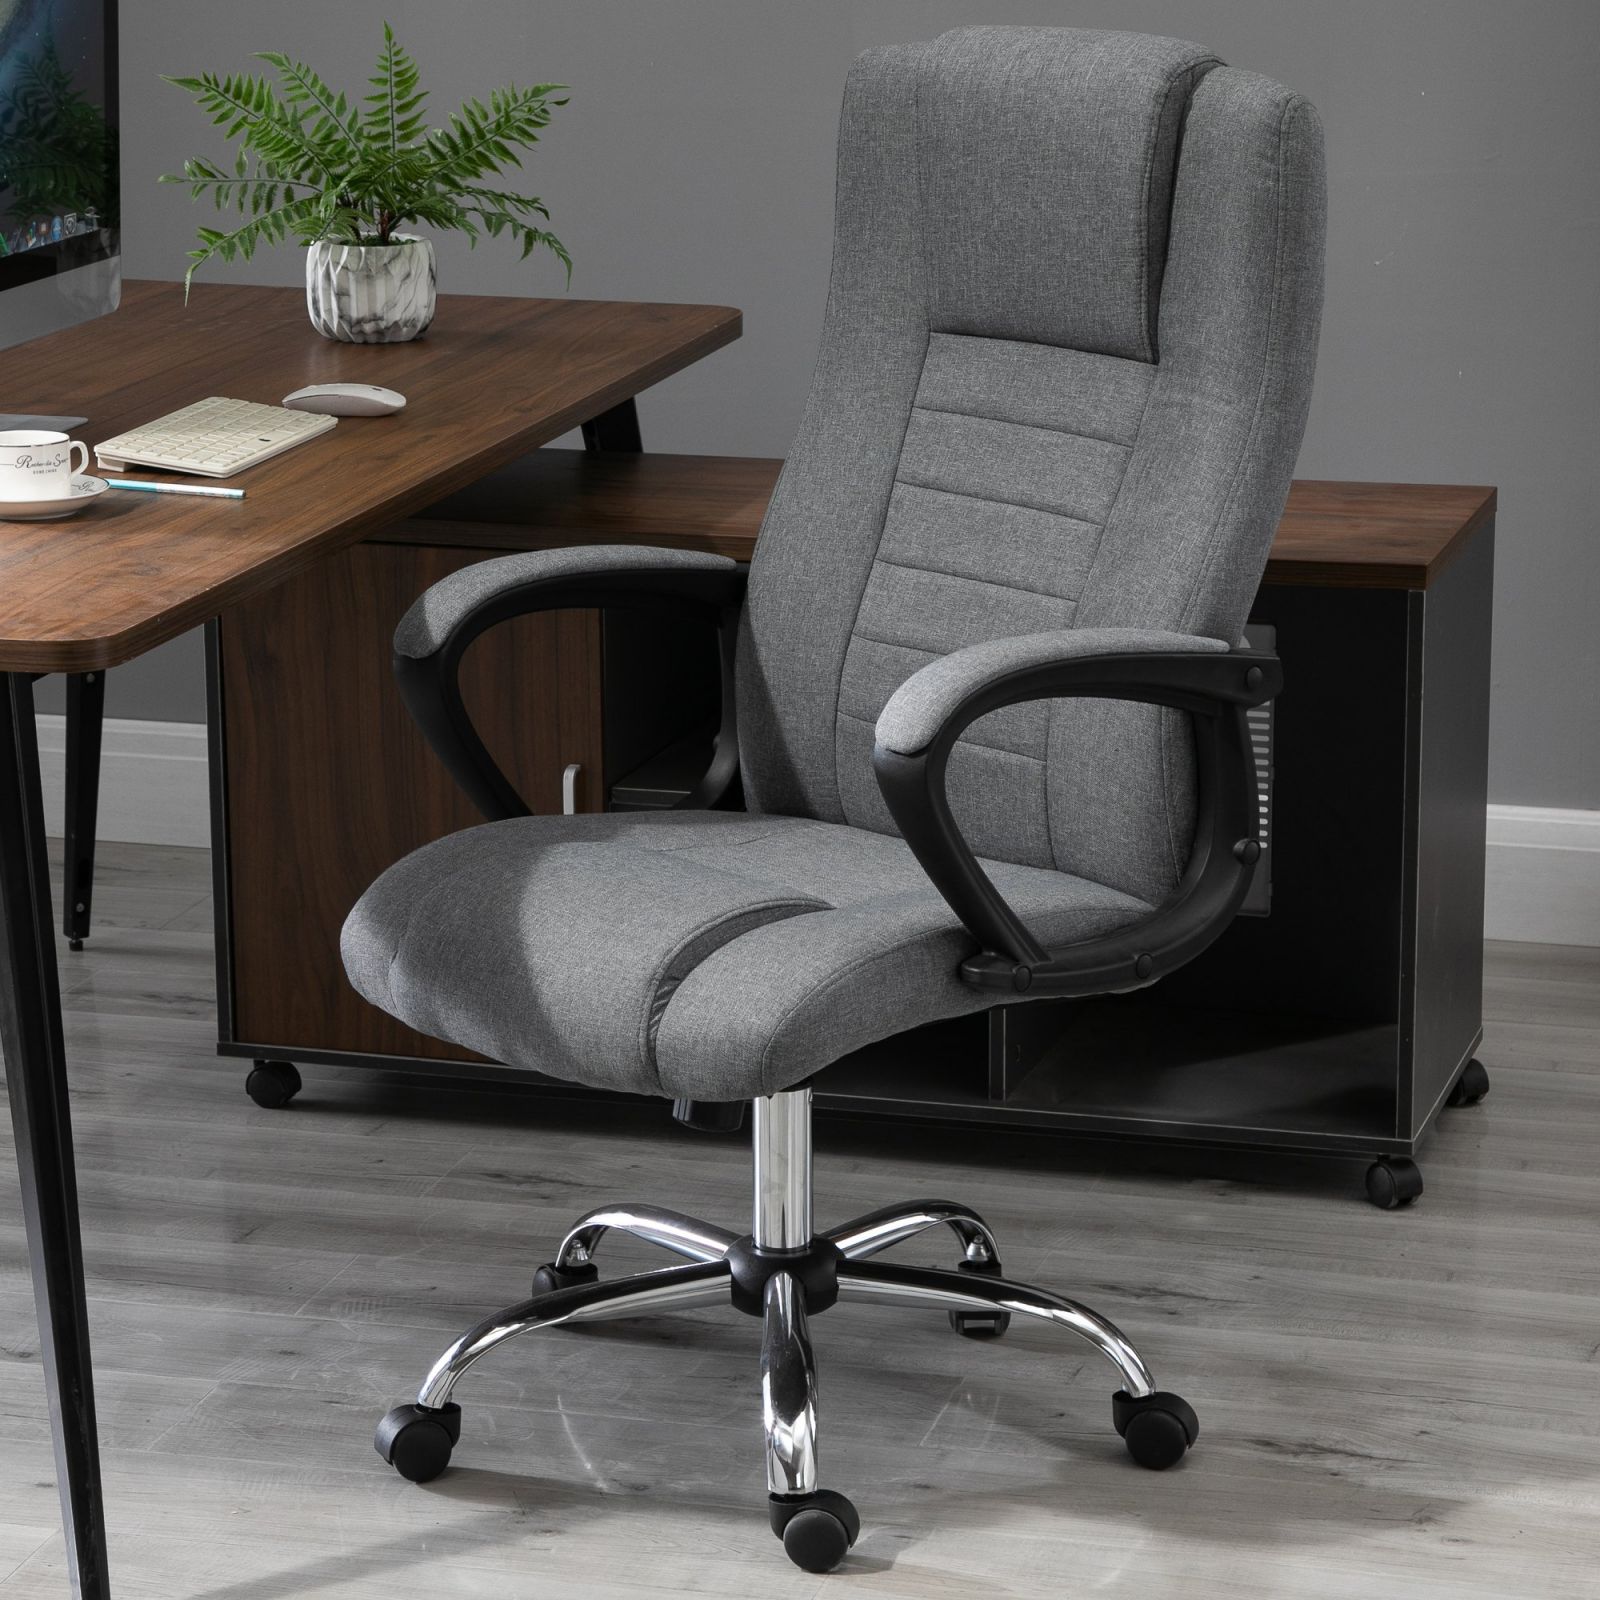 https://caldaiemurali.it/cdn/shop/products/immagine-2-easycomfort-easycomfort-sedia-ufficio-poltrona-da-ufficio-ergonomica-sedia-scrivania-con-altezza-e-inclinazione-regolabile-grigio-ean-8055776912868.jpg?v=1695903229